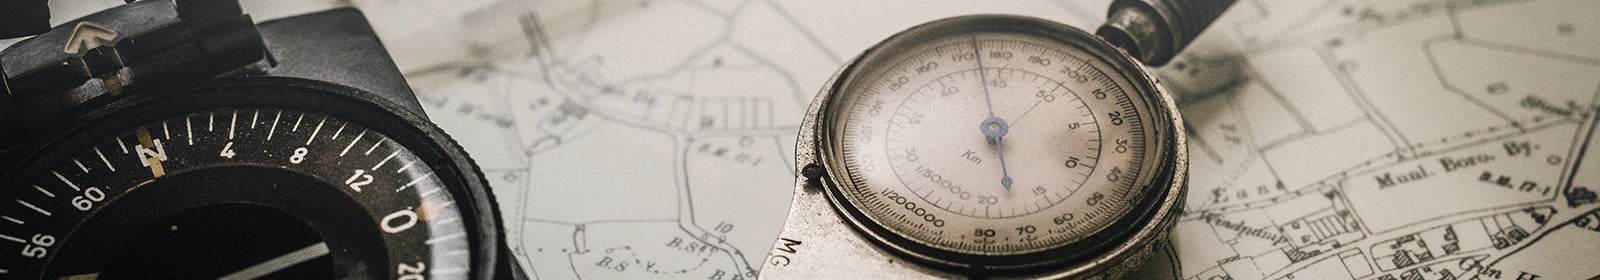 Kompass und Entfernungsmesser auf einer Karte